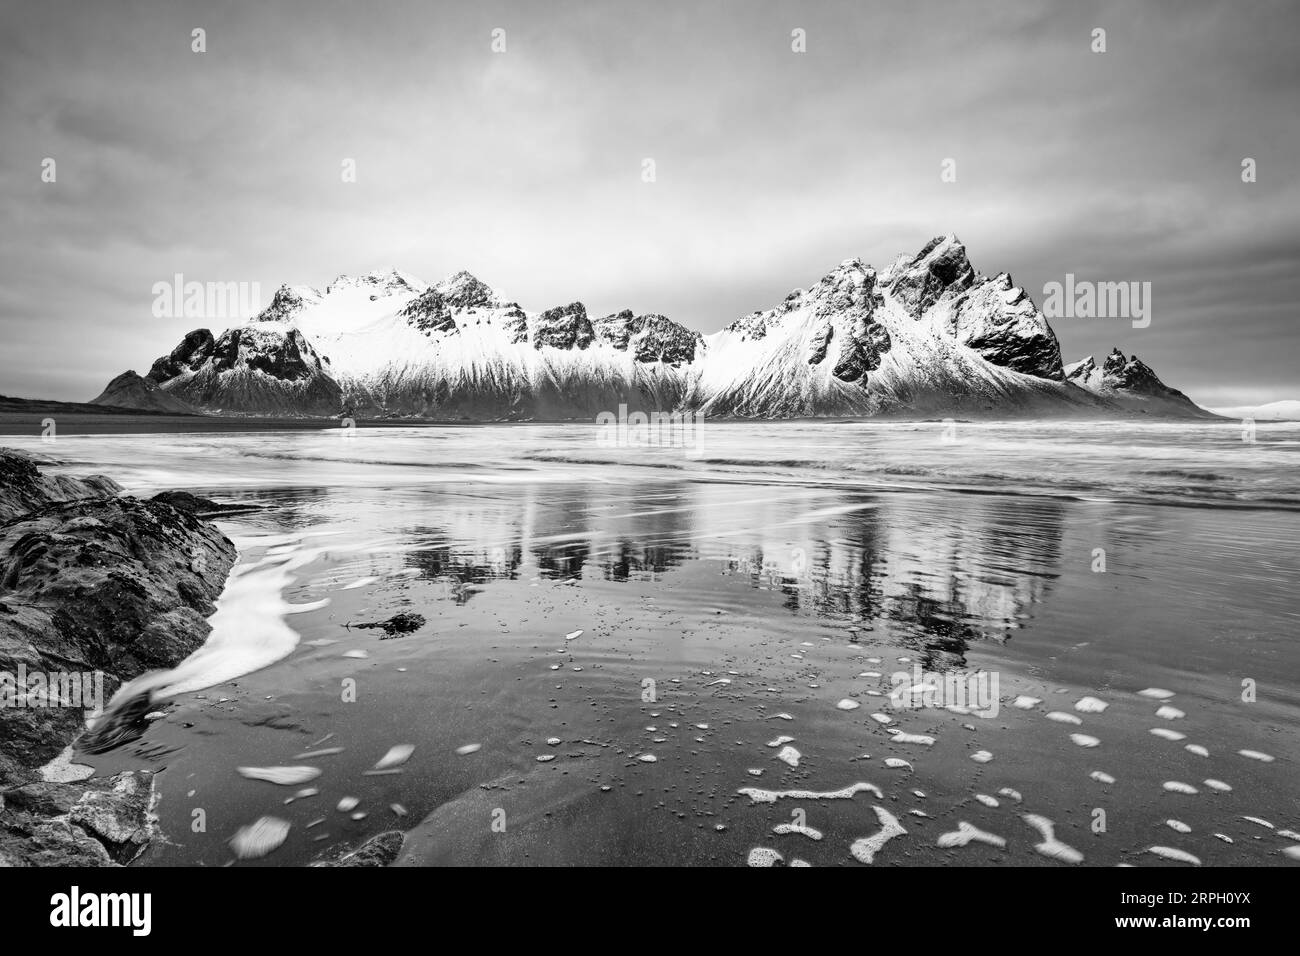 Imagen en blanco y negro de una formación de montaña cubierta de nieve reflejada en el agua de una playa de arena de lava negra, gran efecto de profundidad - ubicación: Islandia, Foto de stock